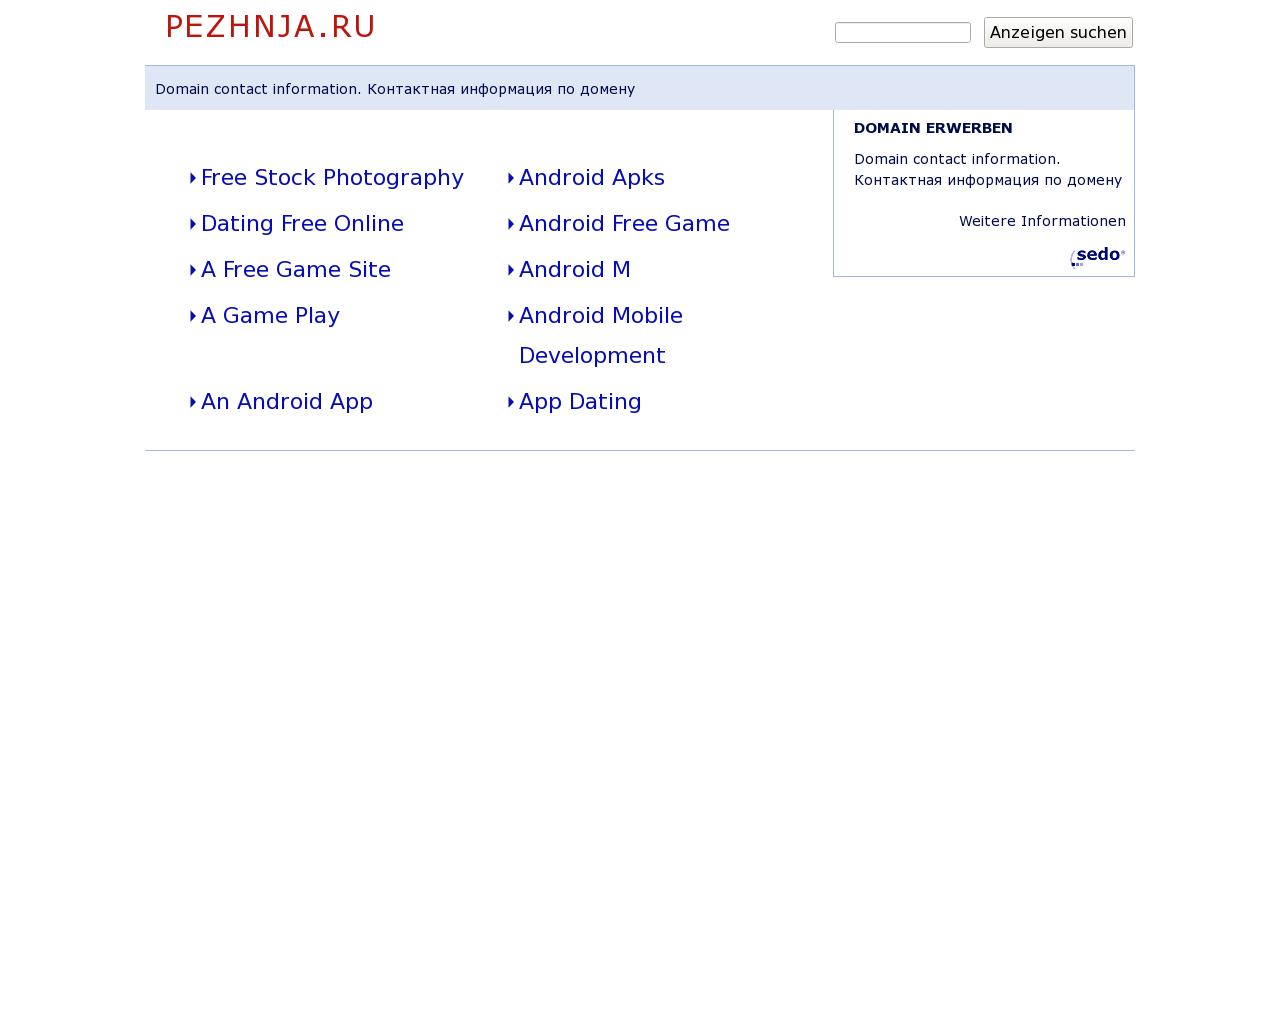 Изображение сайта pezhnja.ru в разрешении 1280x1024